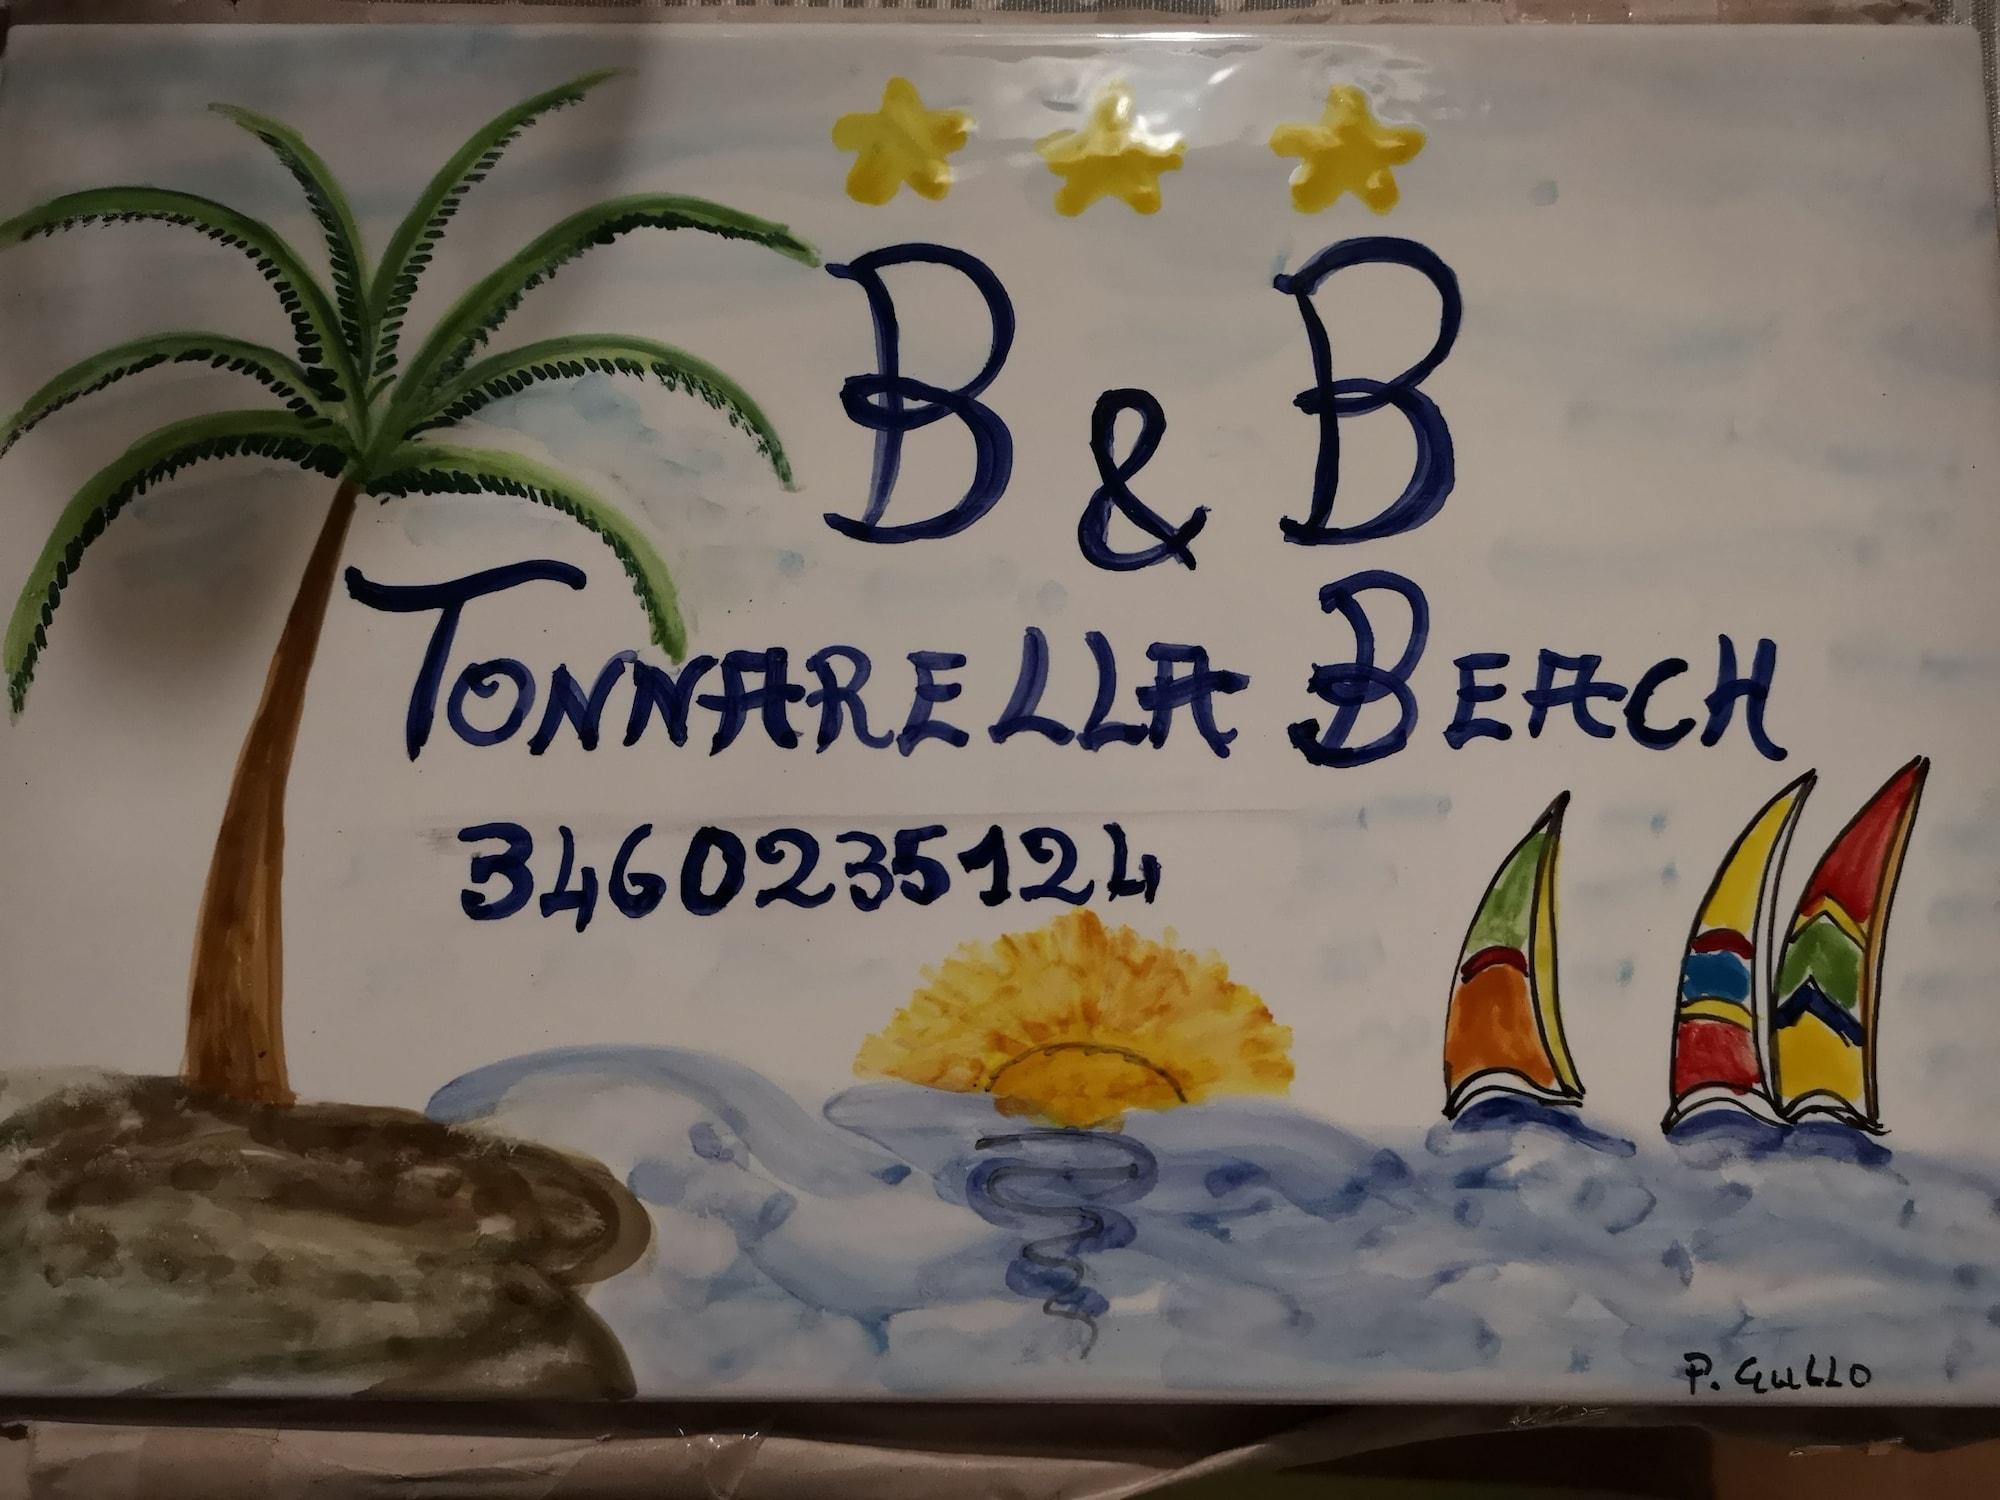 Varios B&B Tonnarella Beach